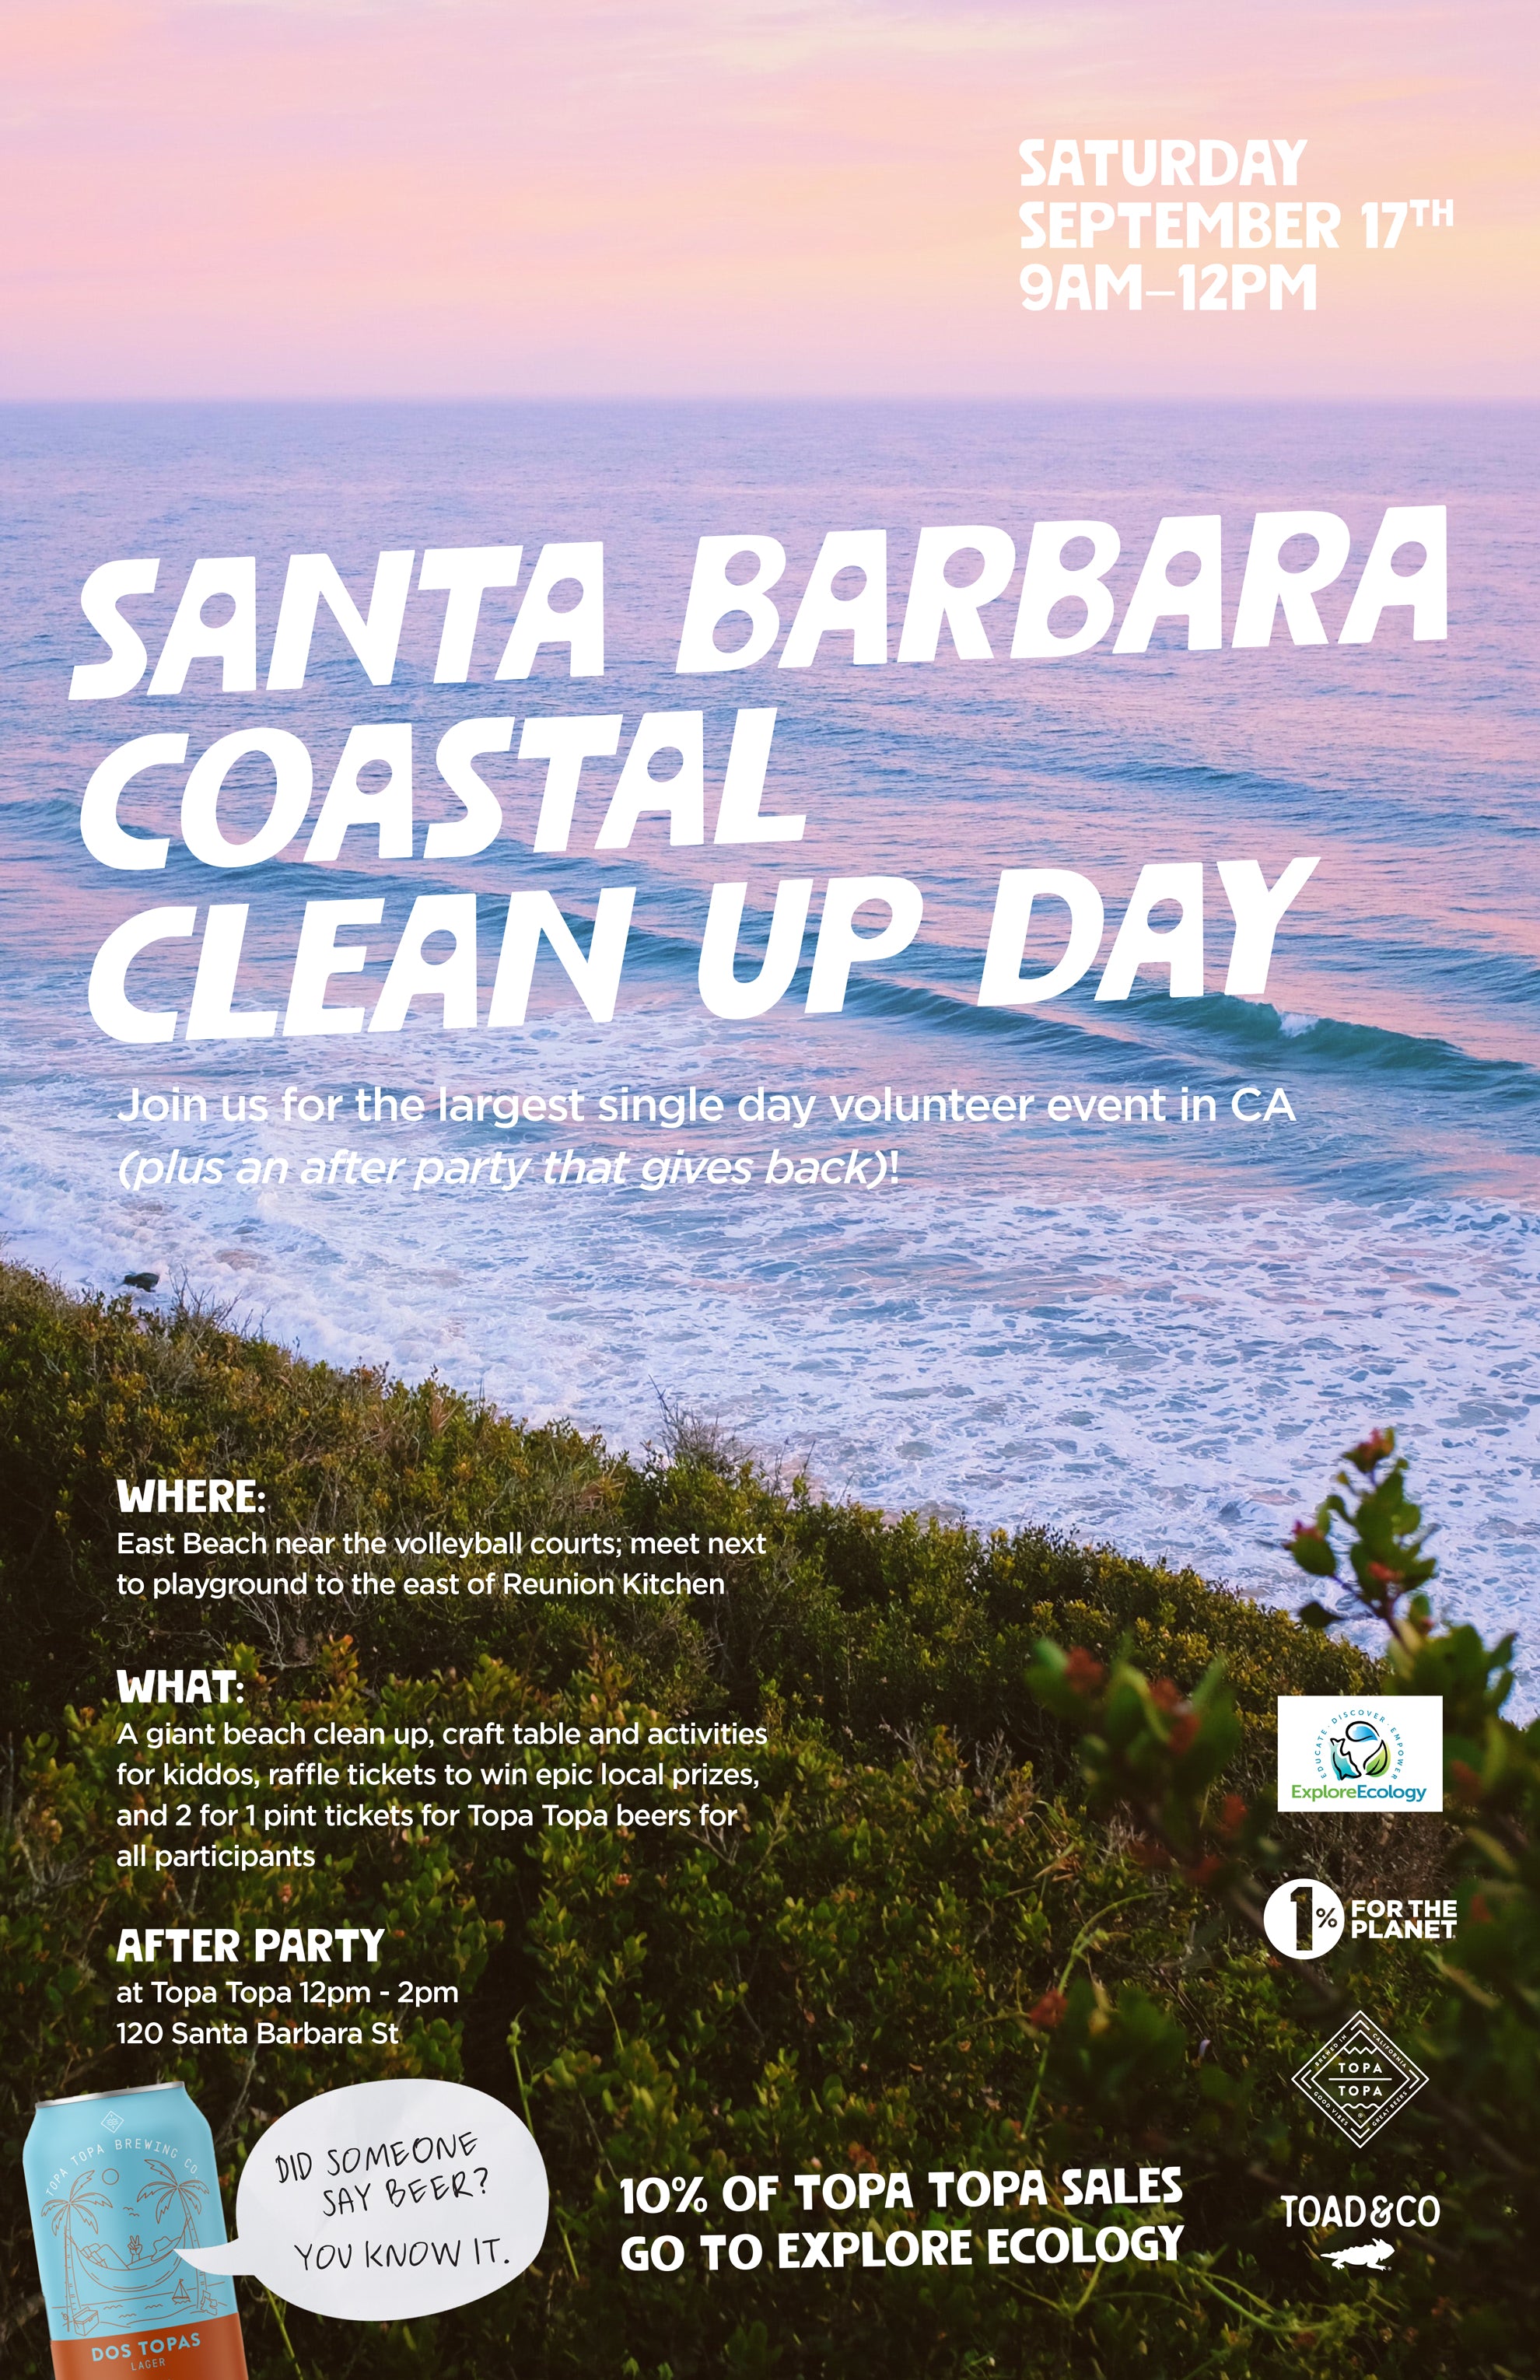 Santa Barbara Coastal Clean Up Day